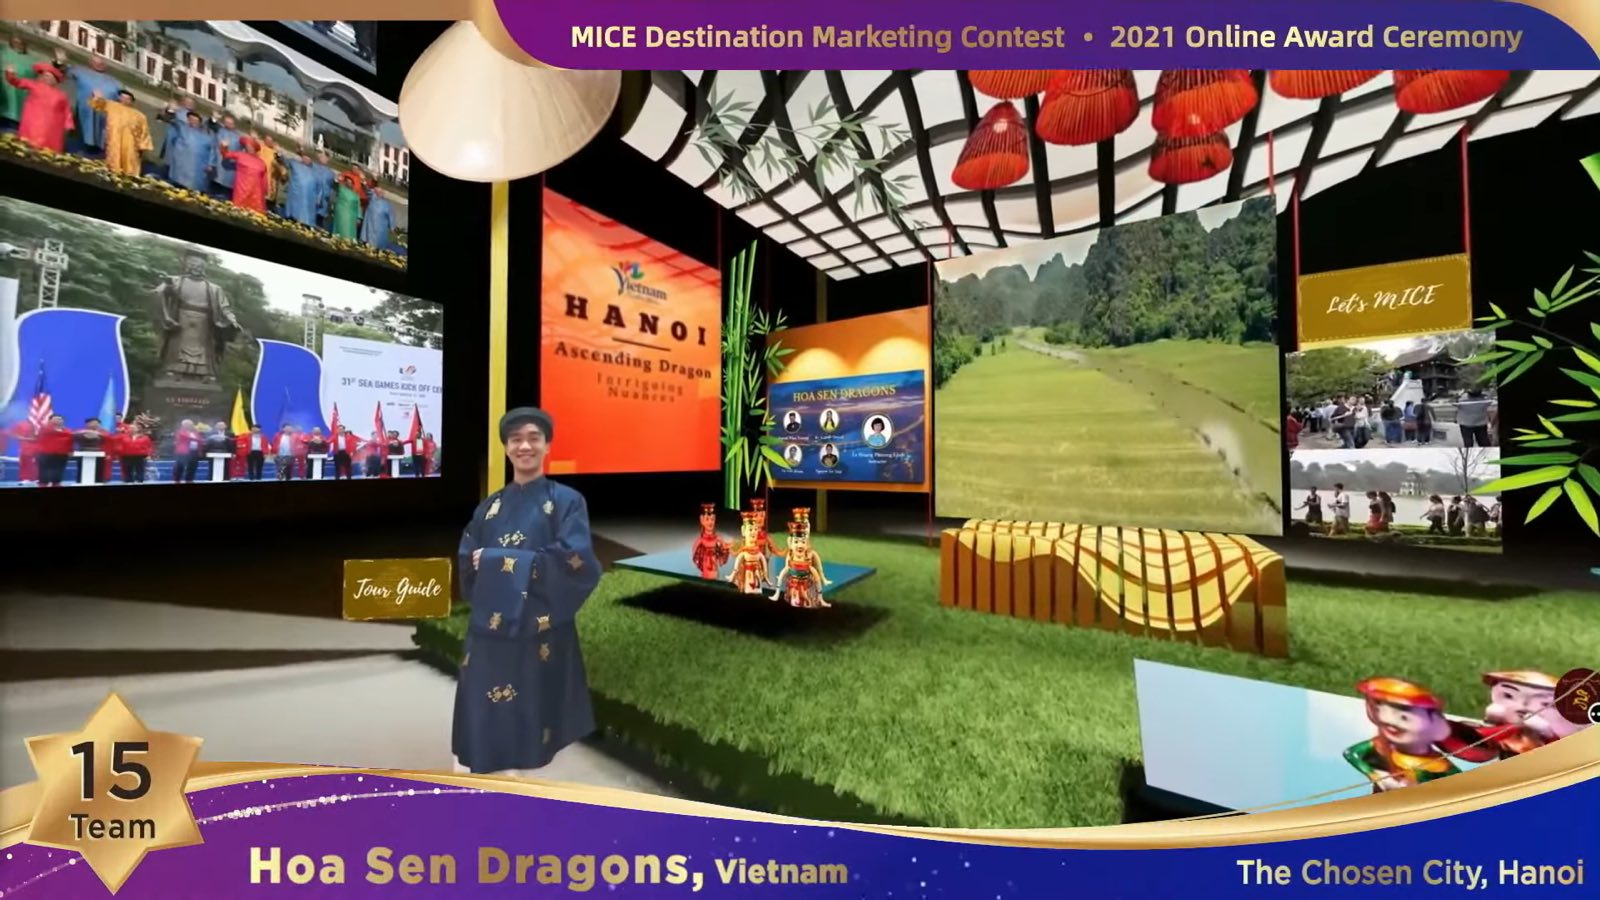 Đại diện Việt Nam, đội Hoa Sen Dragons, đã chọn điểm đến Hà Nội và lấy tiêu đề Ascending Dragon – Intriguing Nuances để tham dự và đạt 2 giải nhì. (Nguồn ảnh: Facebook Đại Học Hoa Sen)